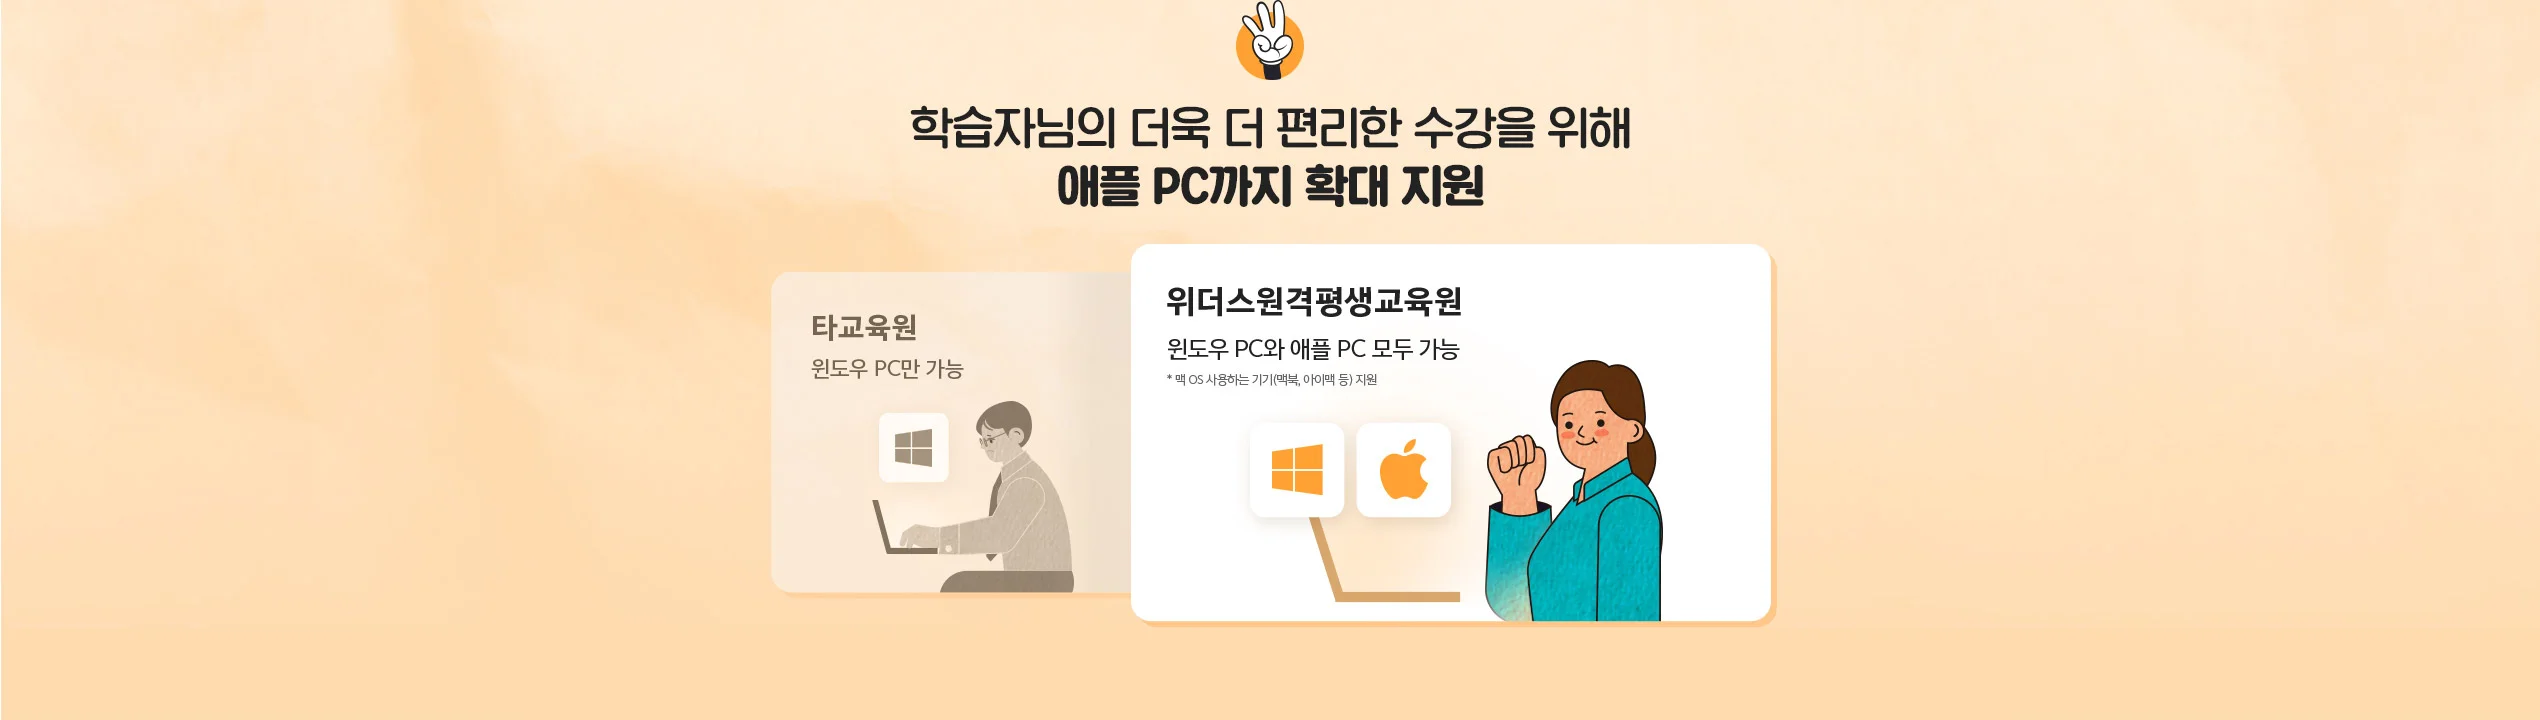 3. 학습자님의 더욱 더 편리한 수강을 위해 애플 PC까지 확대 지원